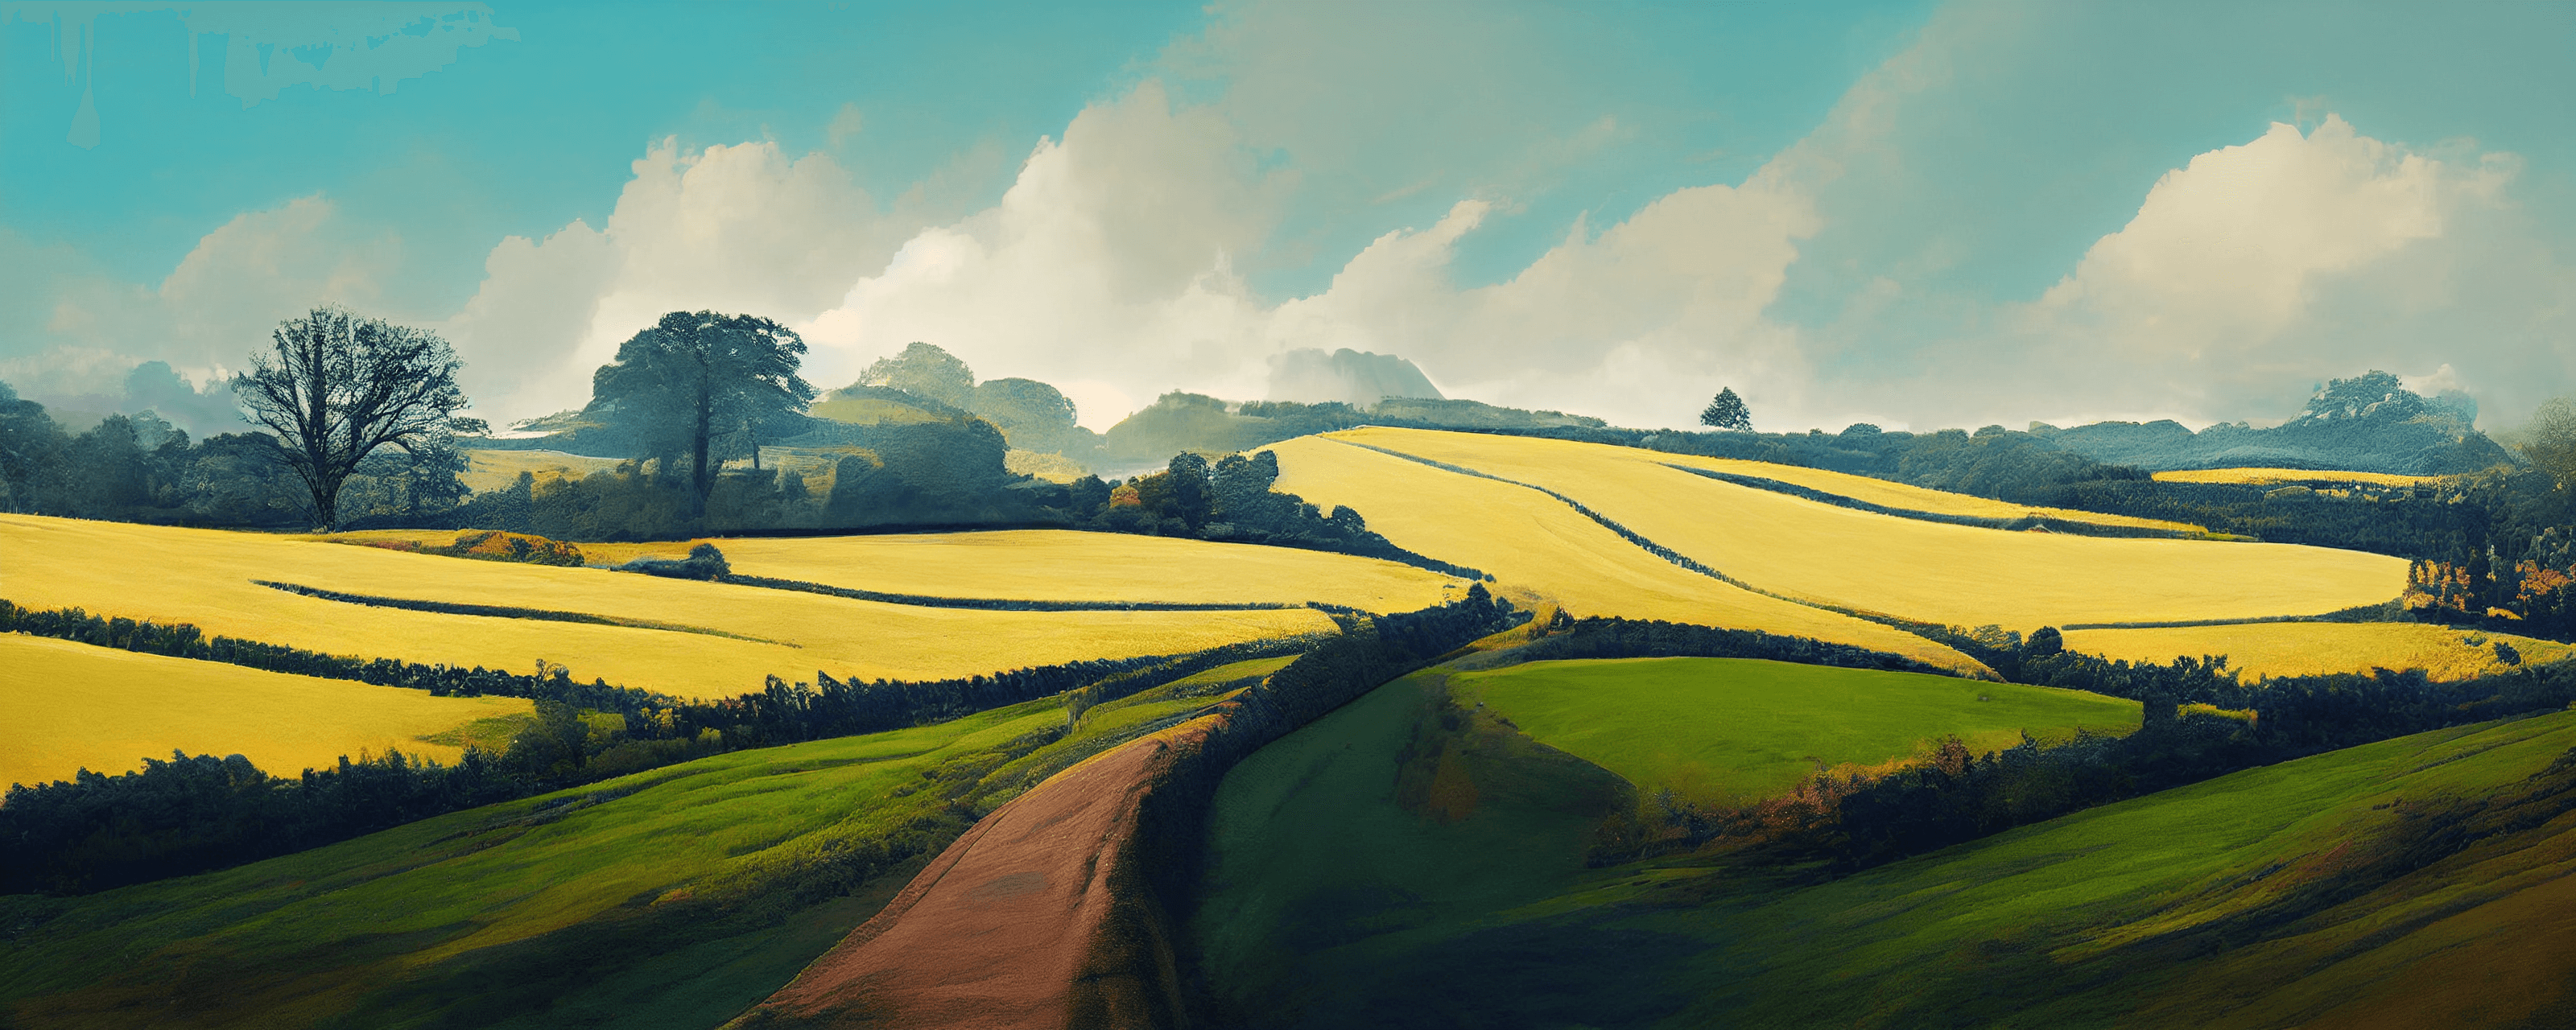 British Devon countryside